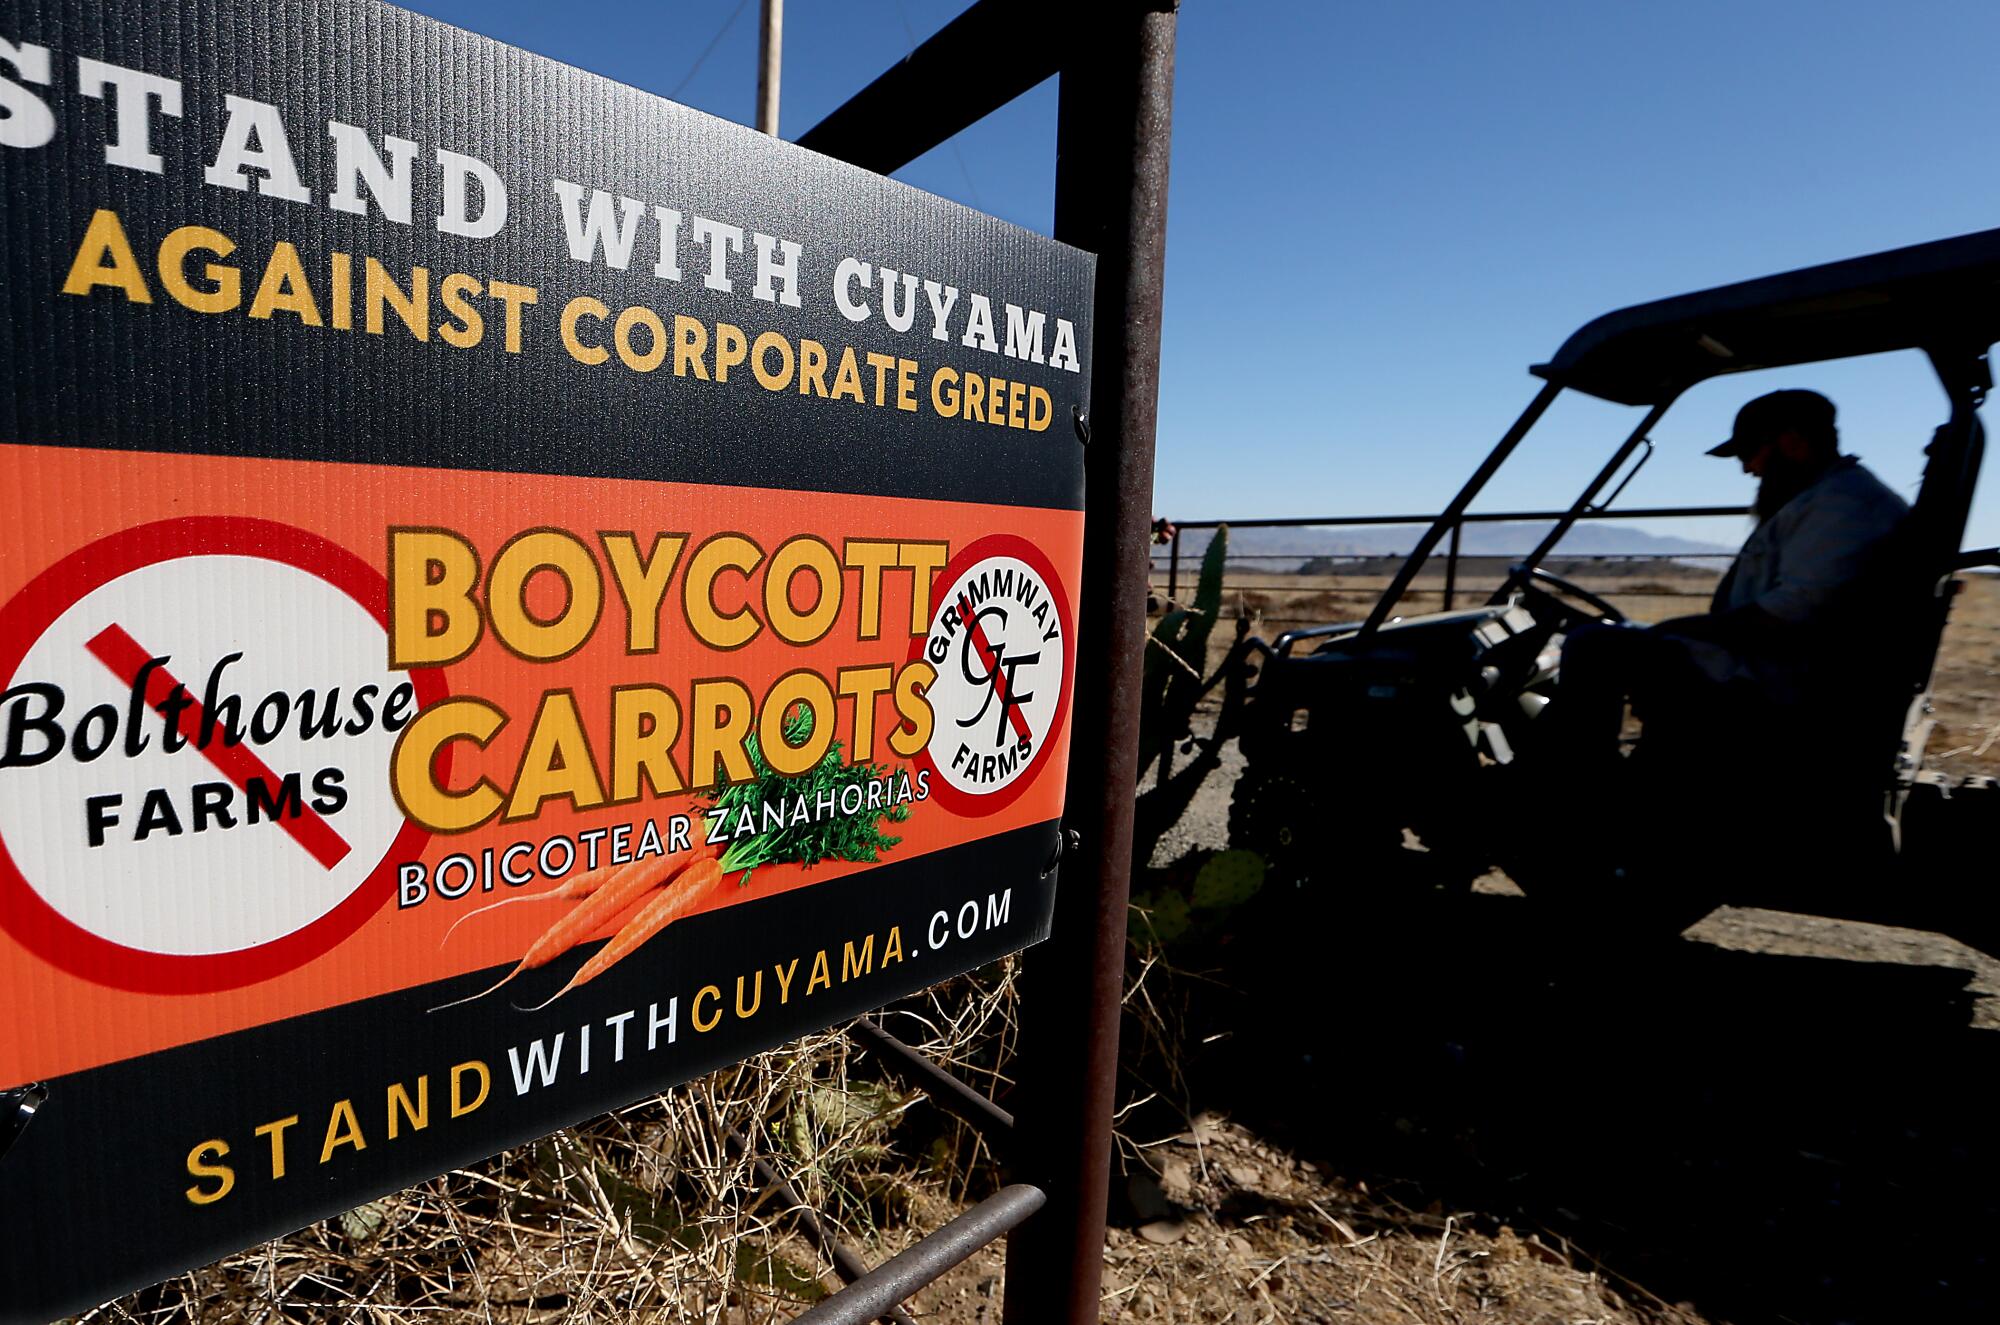 Un letrero dice "boicotear las zanahorias."